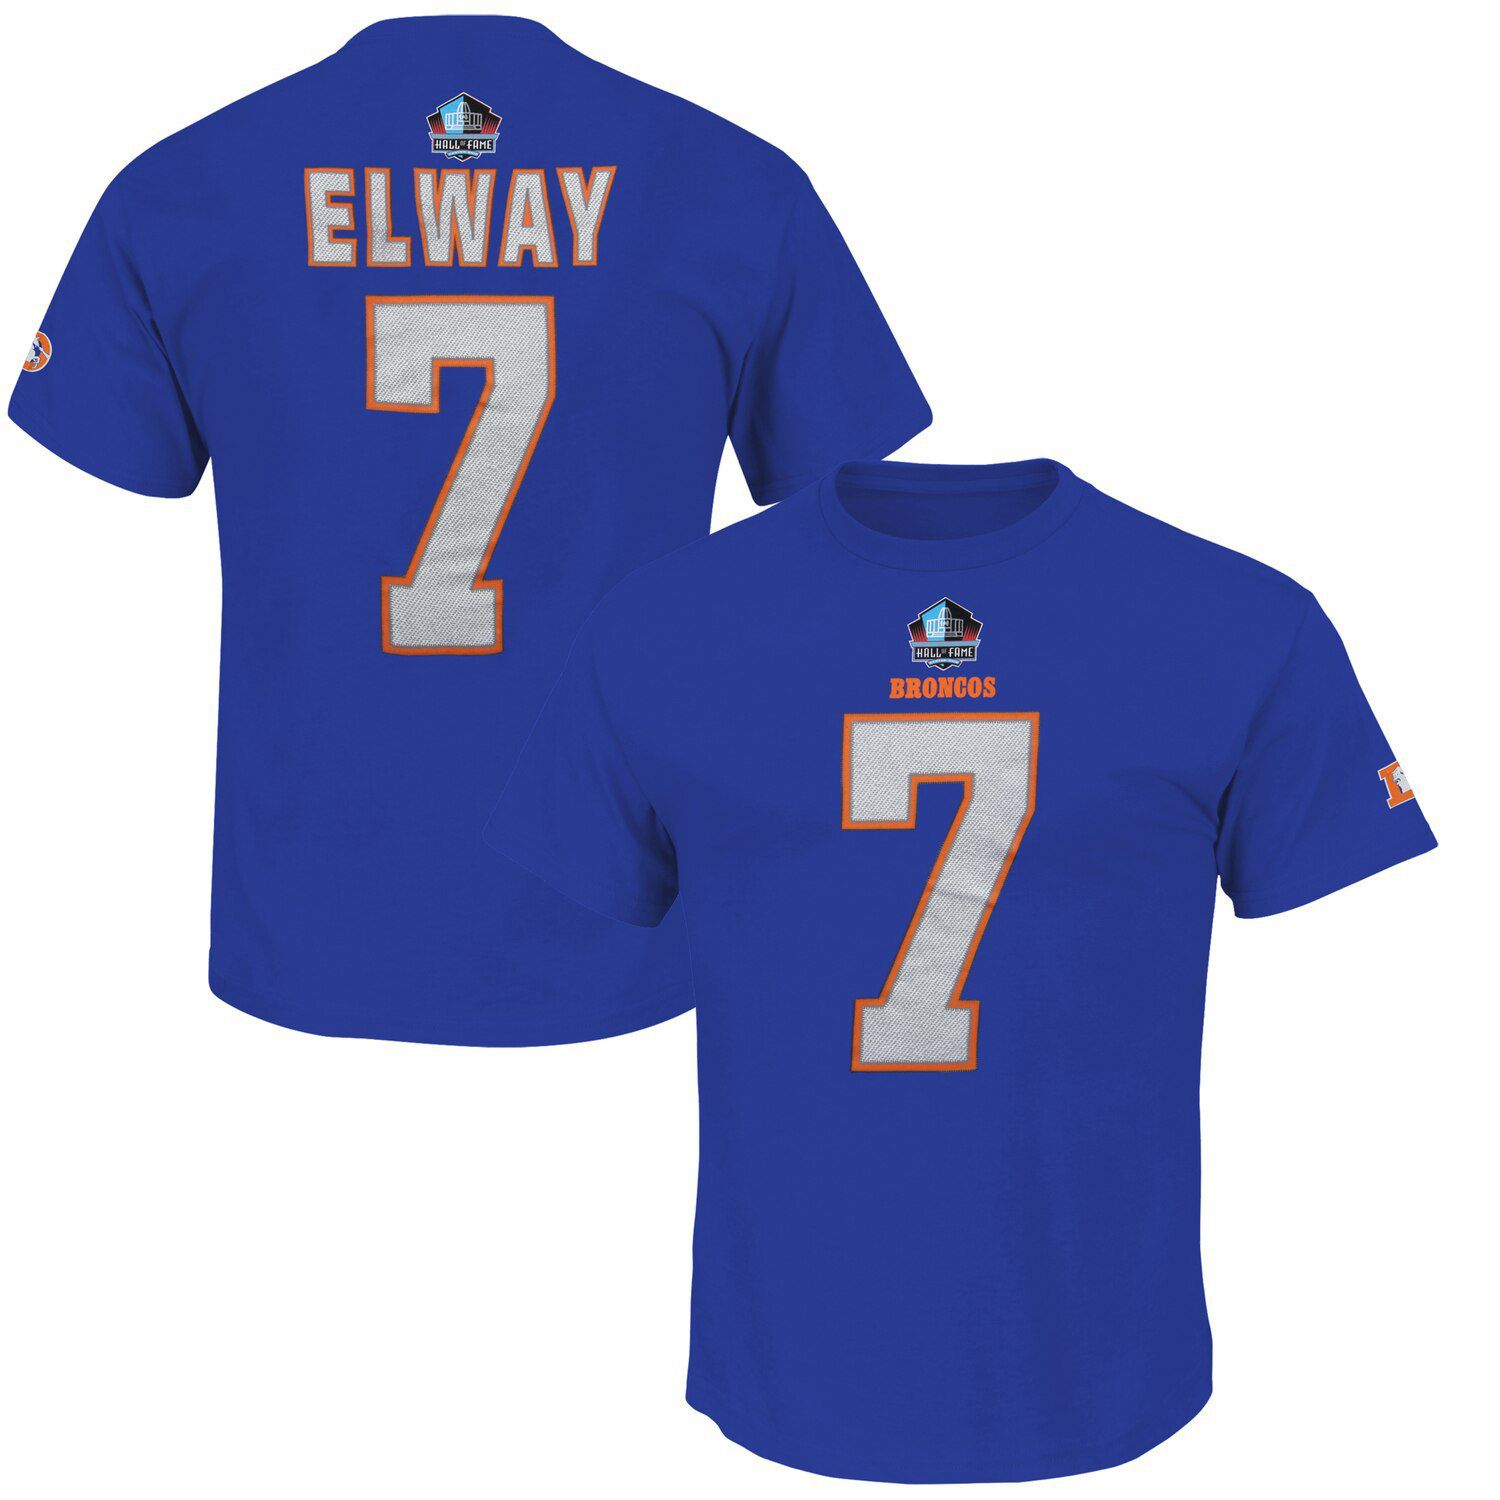 john elway jersey number